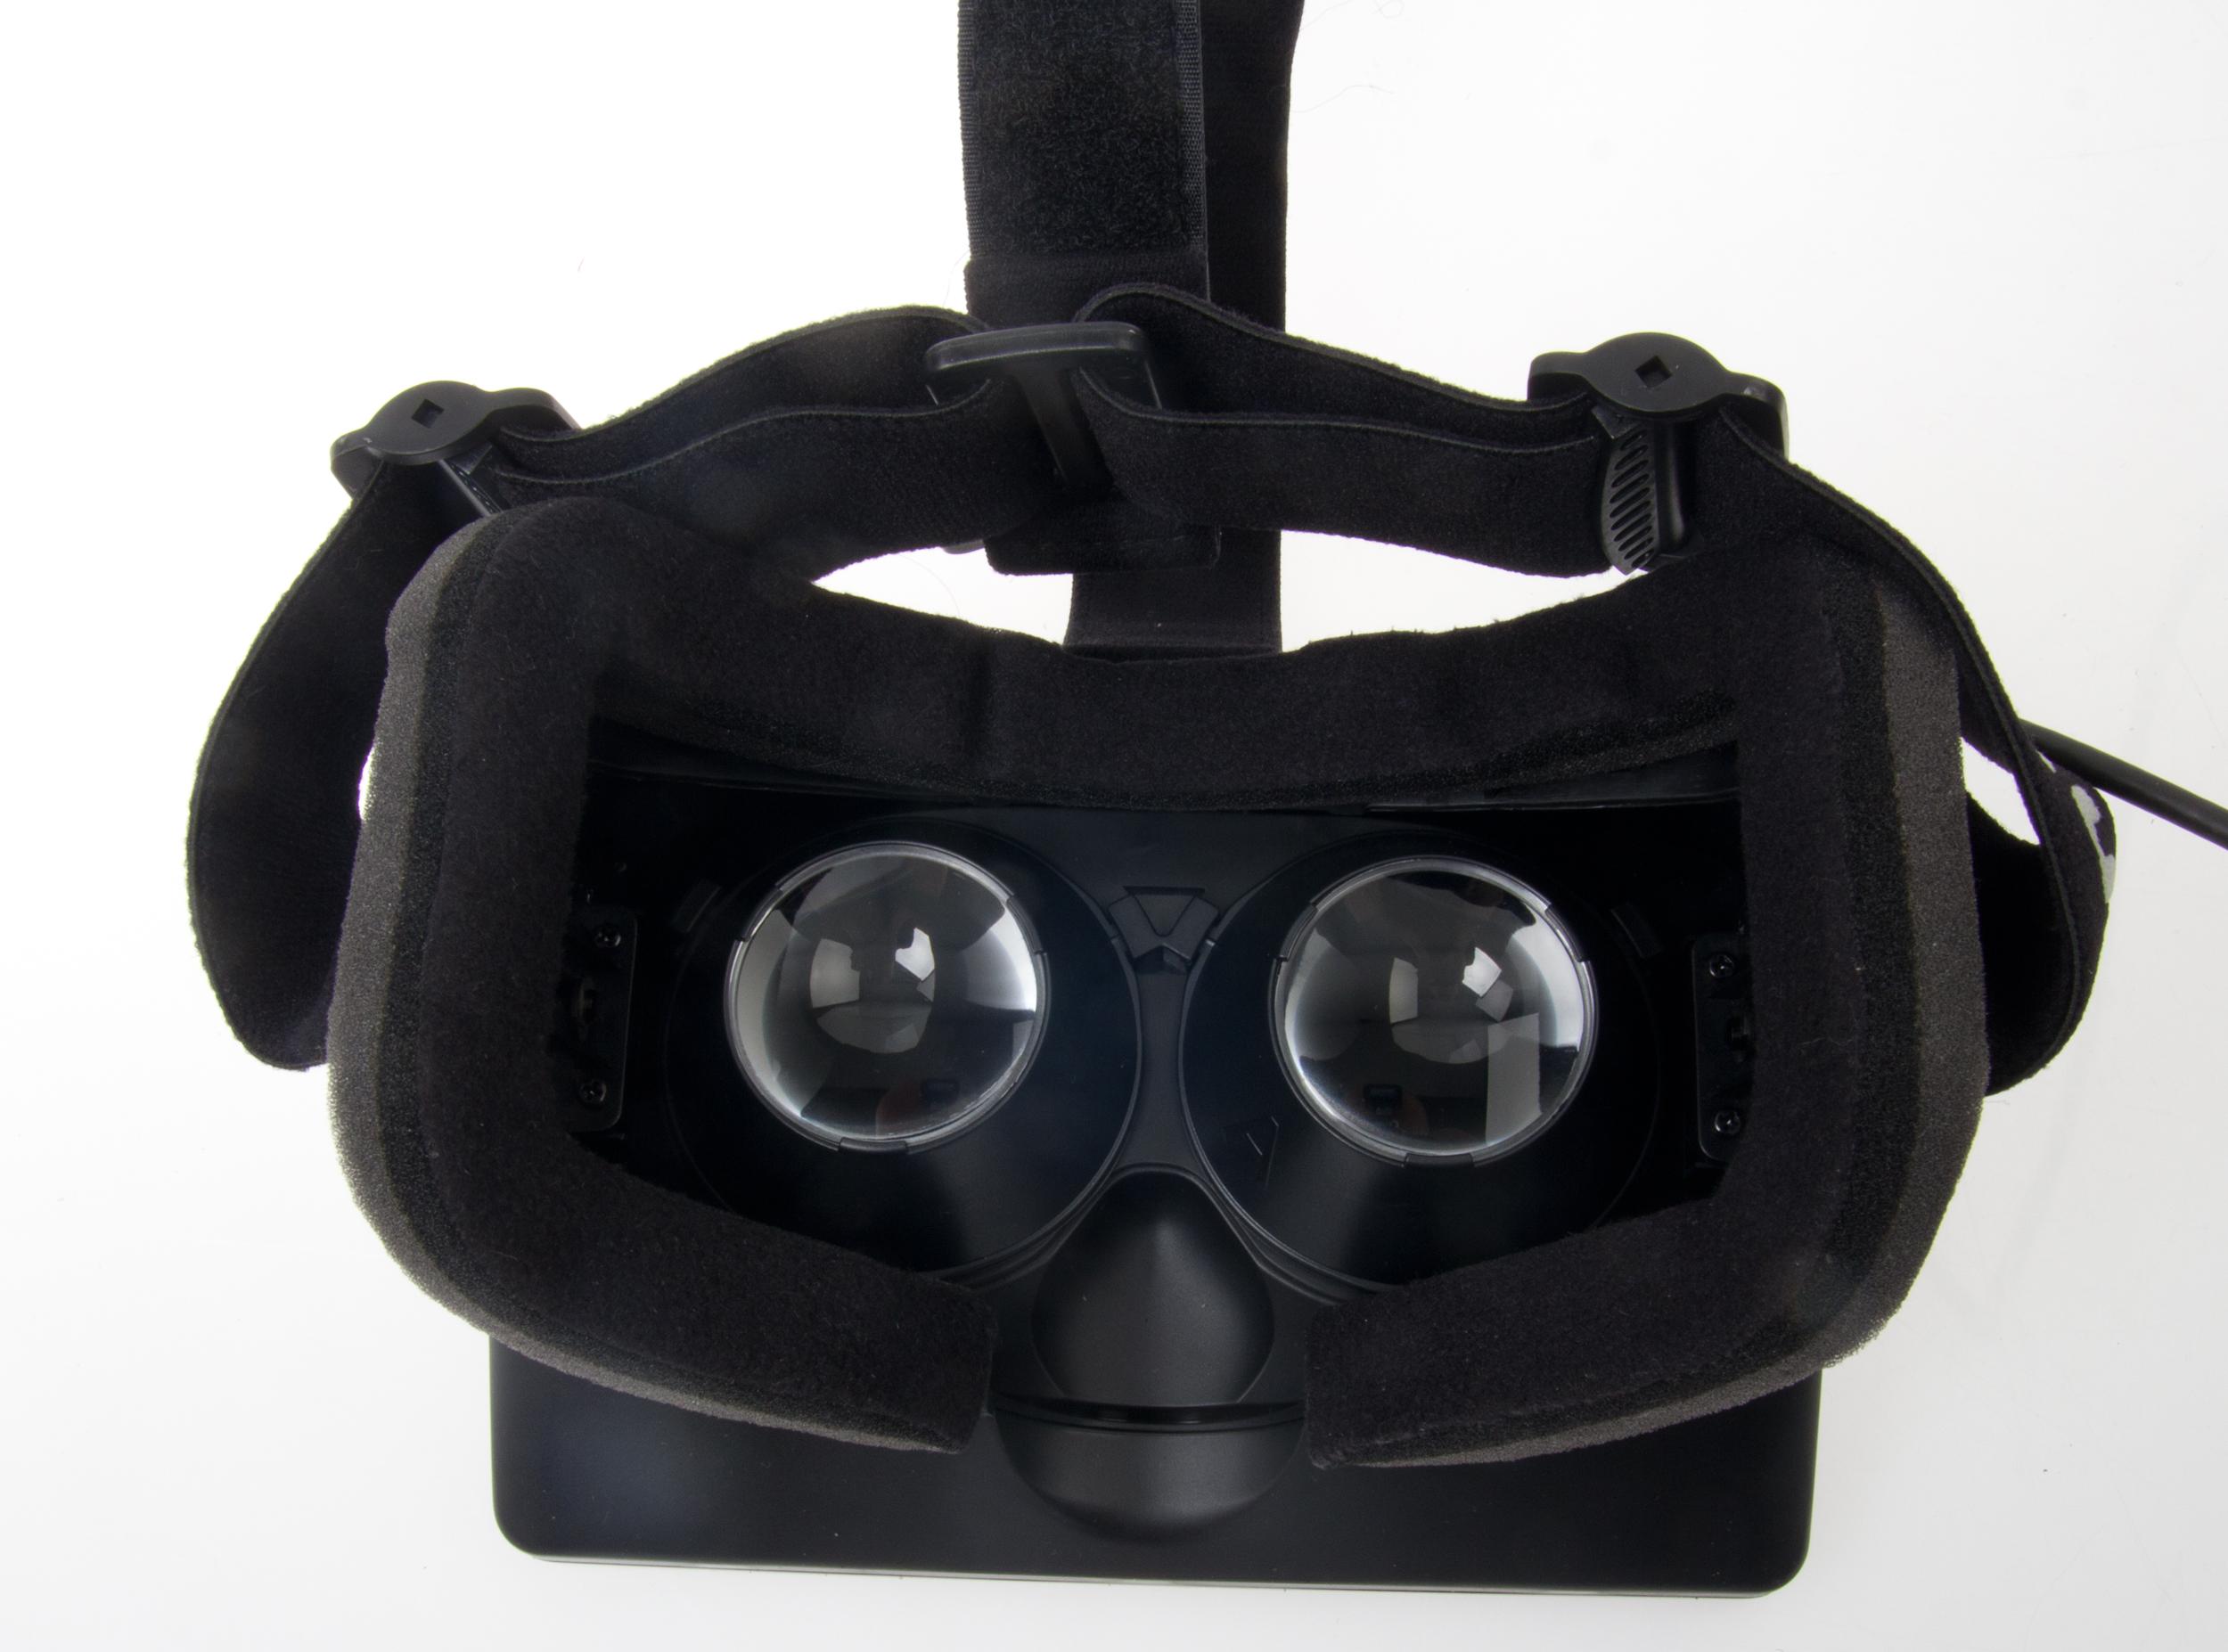 Linsene inni Oculus VR kan skiftes ut, som er til stor hjelp for nærsynte.Foto: Rolf B. Wegner, Hardware.no